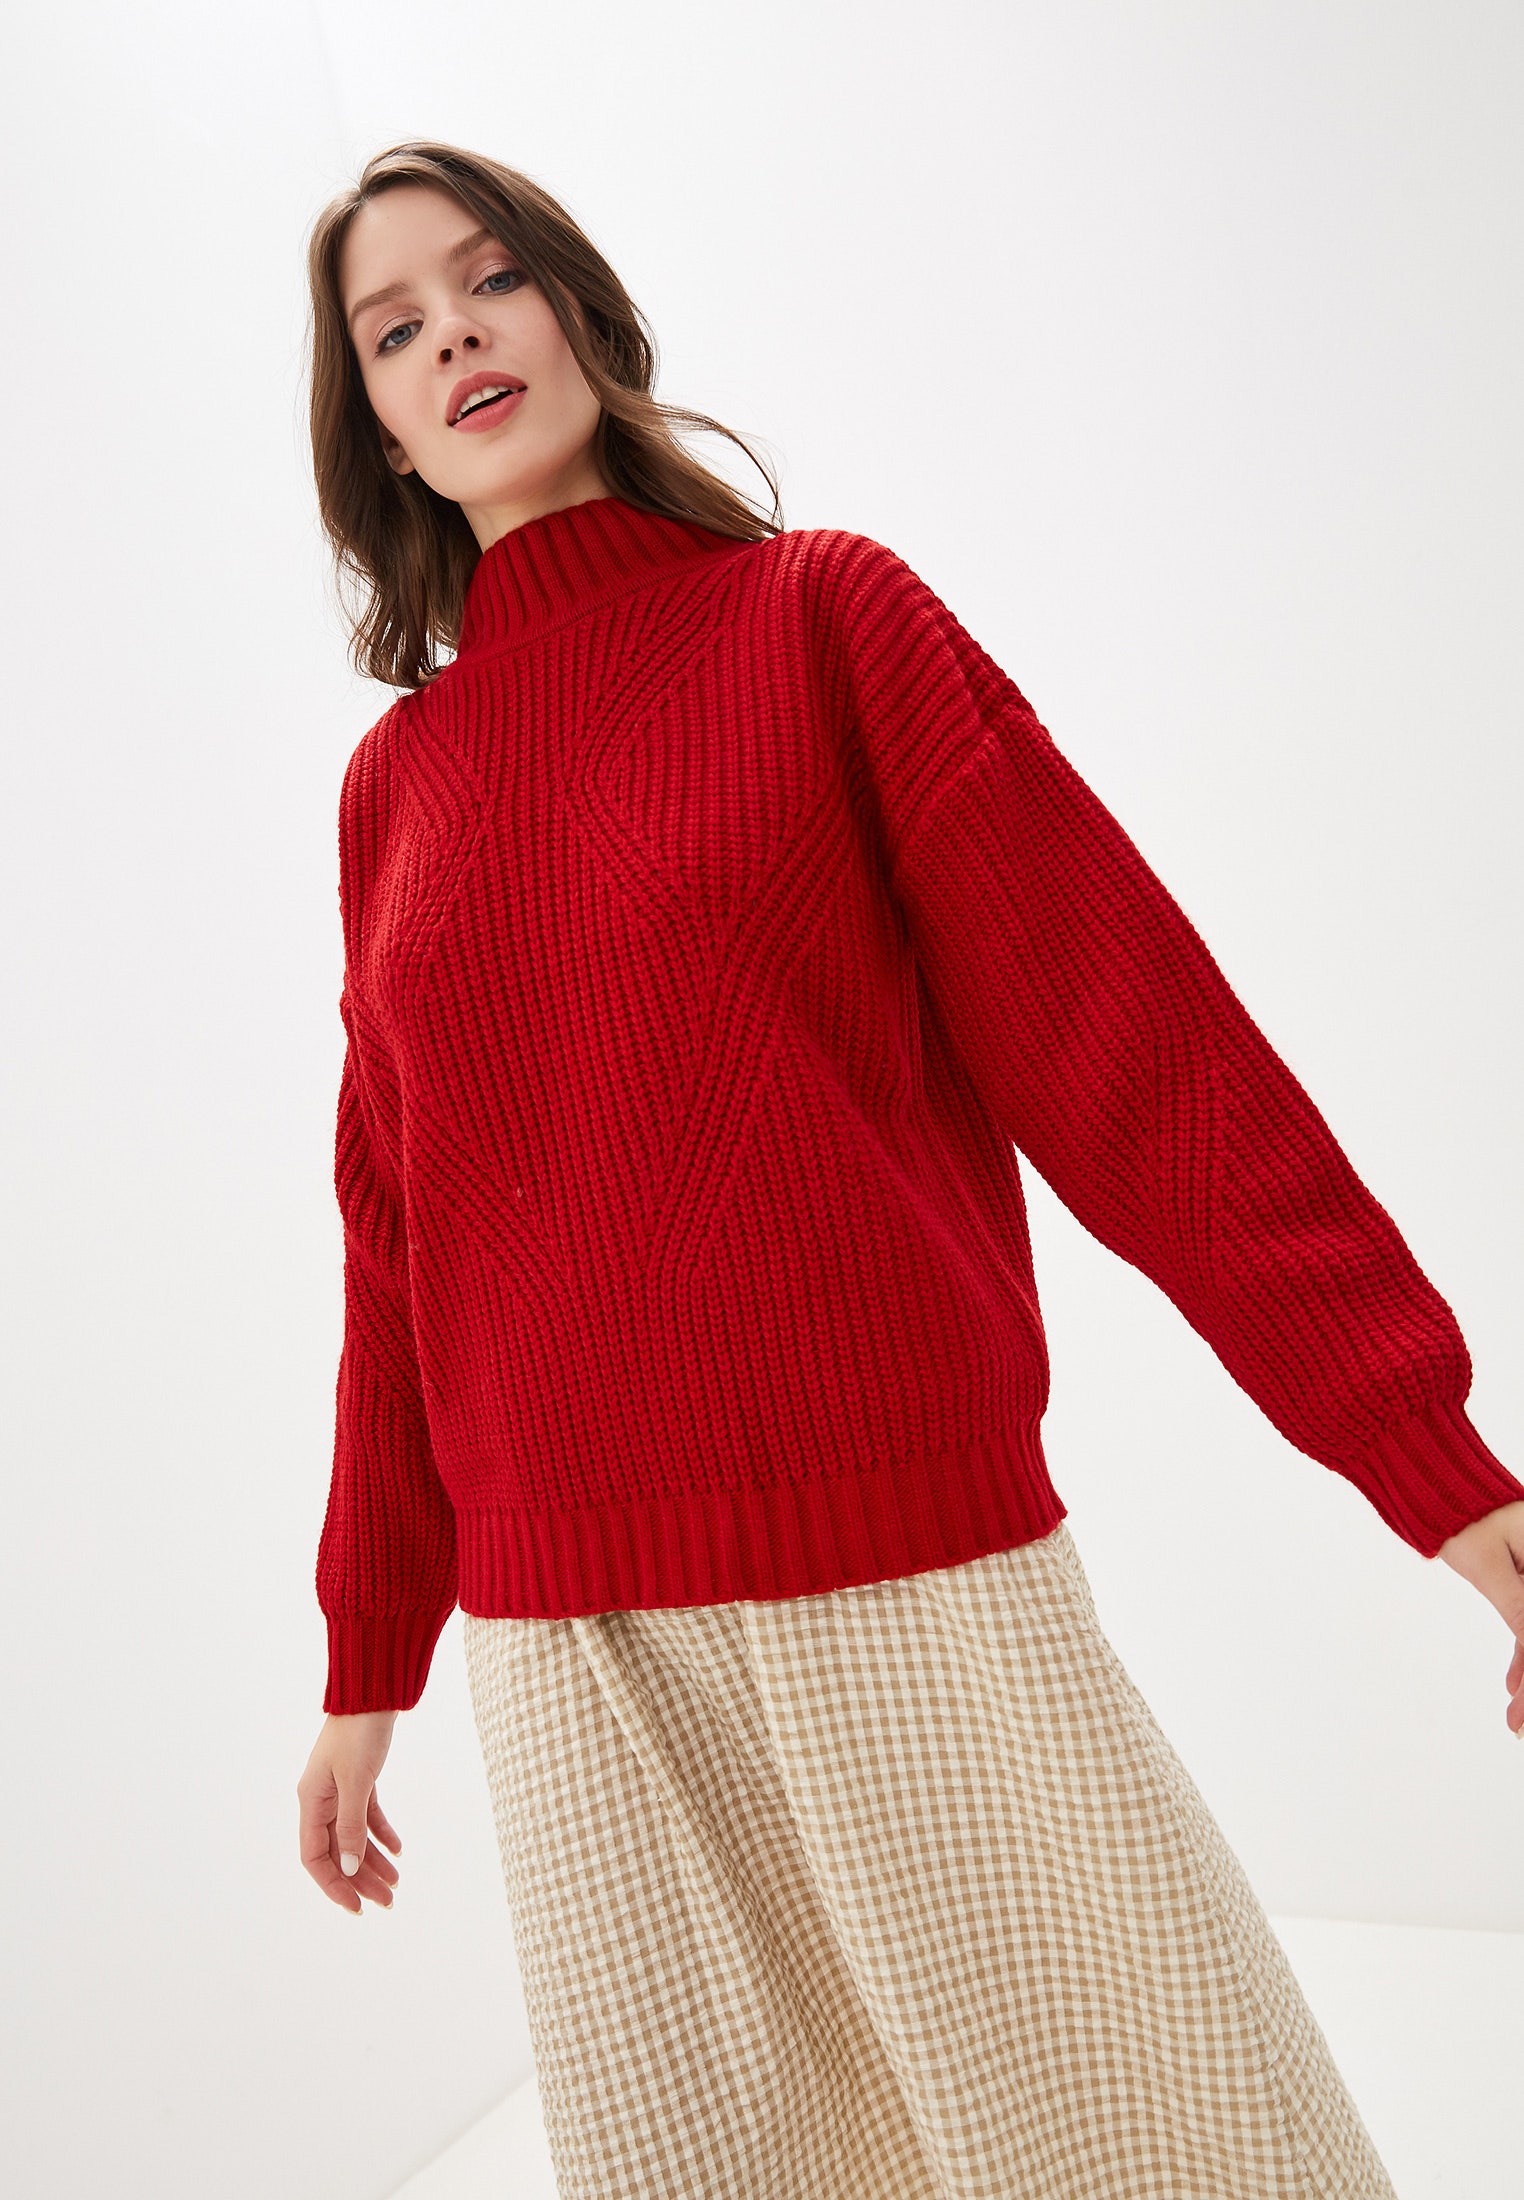 10 красных вязаных свитеров для встречи Нового года и повседневных образов